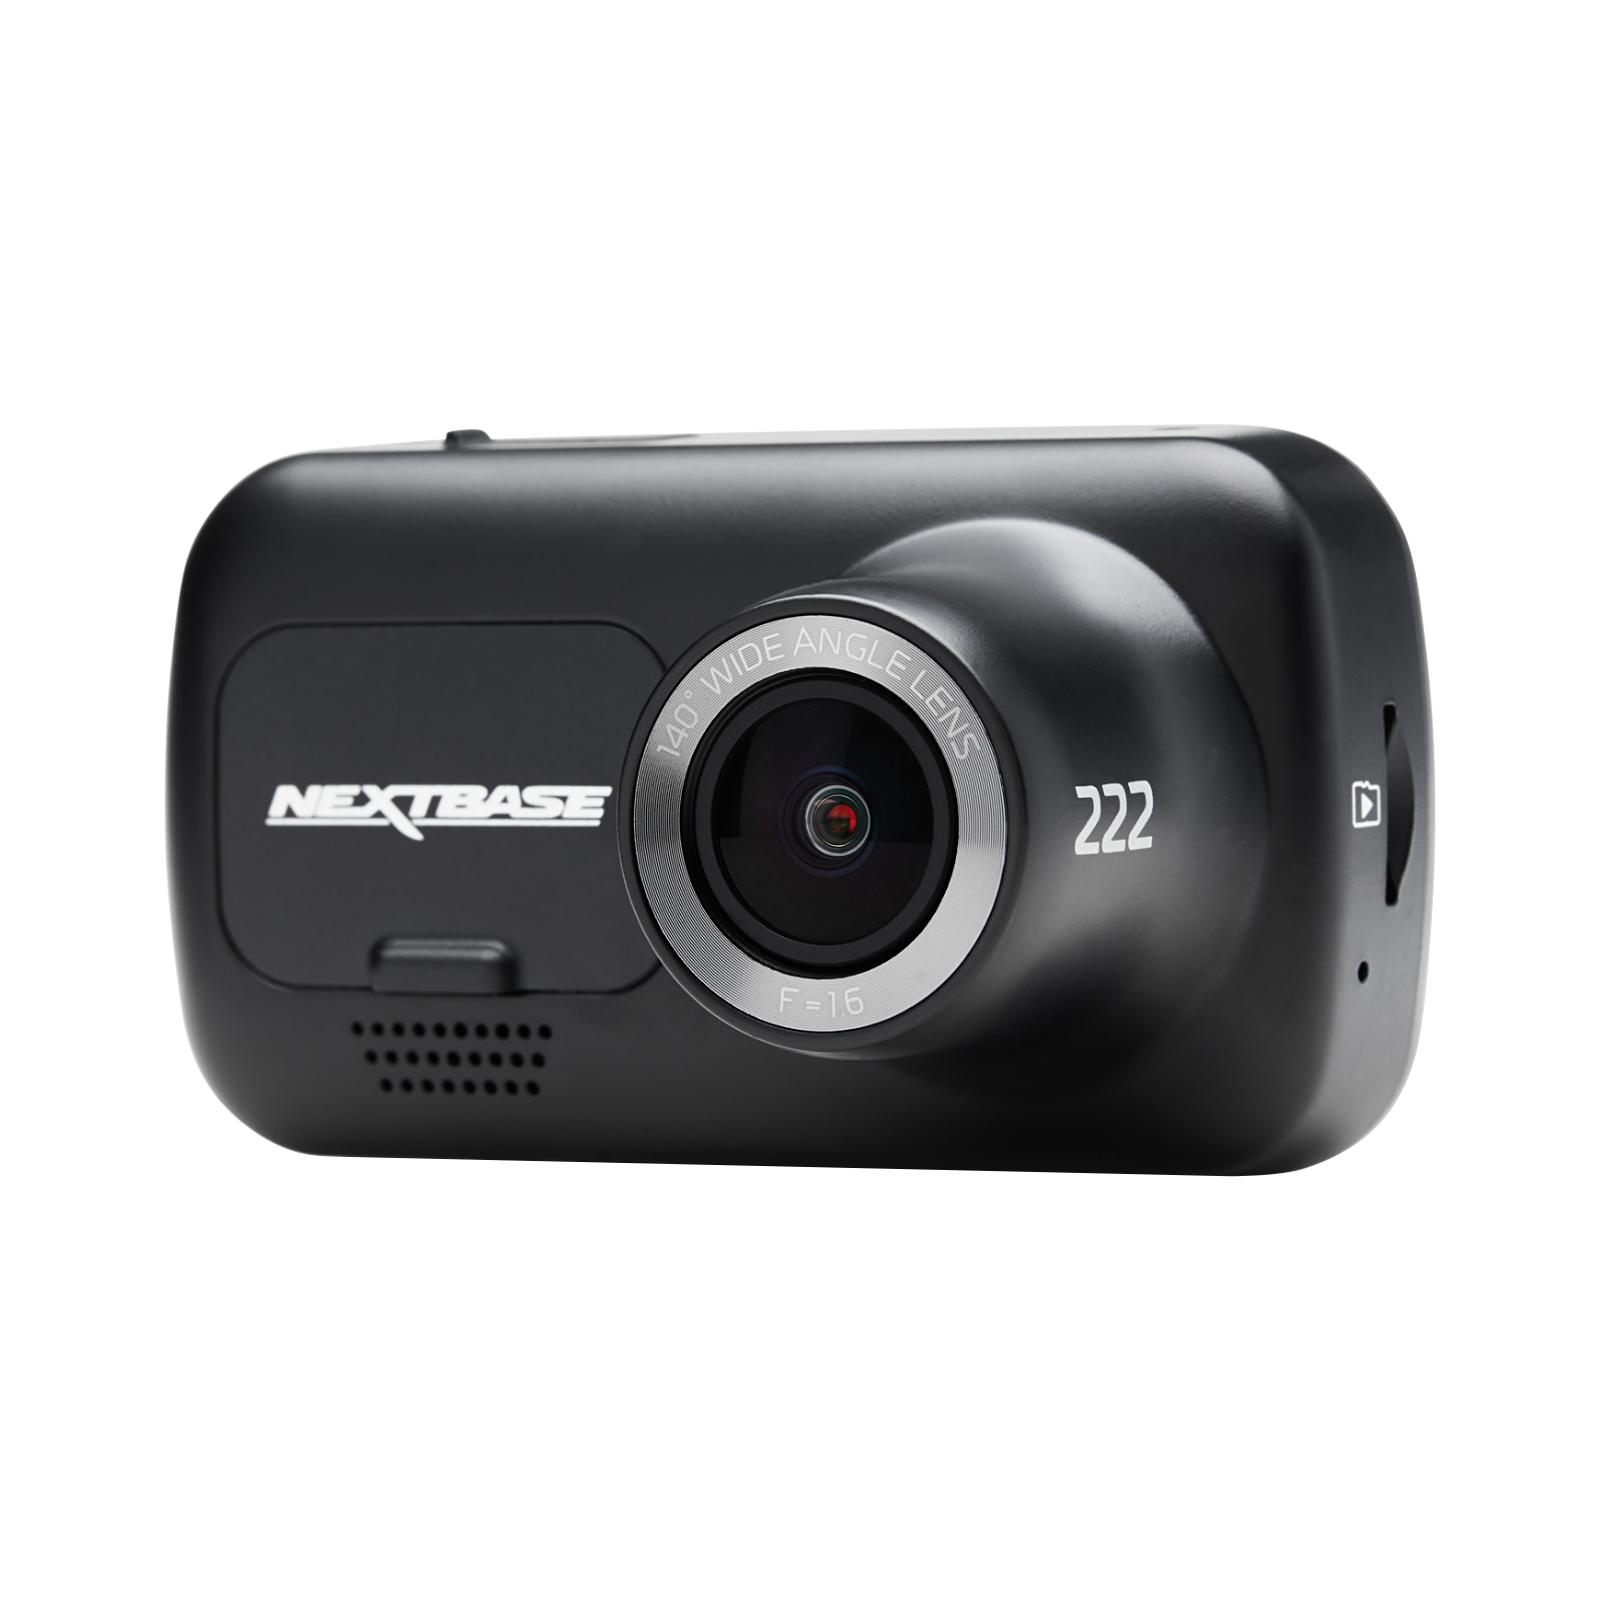 Nextbase 222 Dash Cam Full HD camera